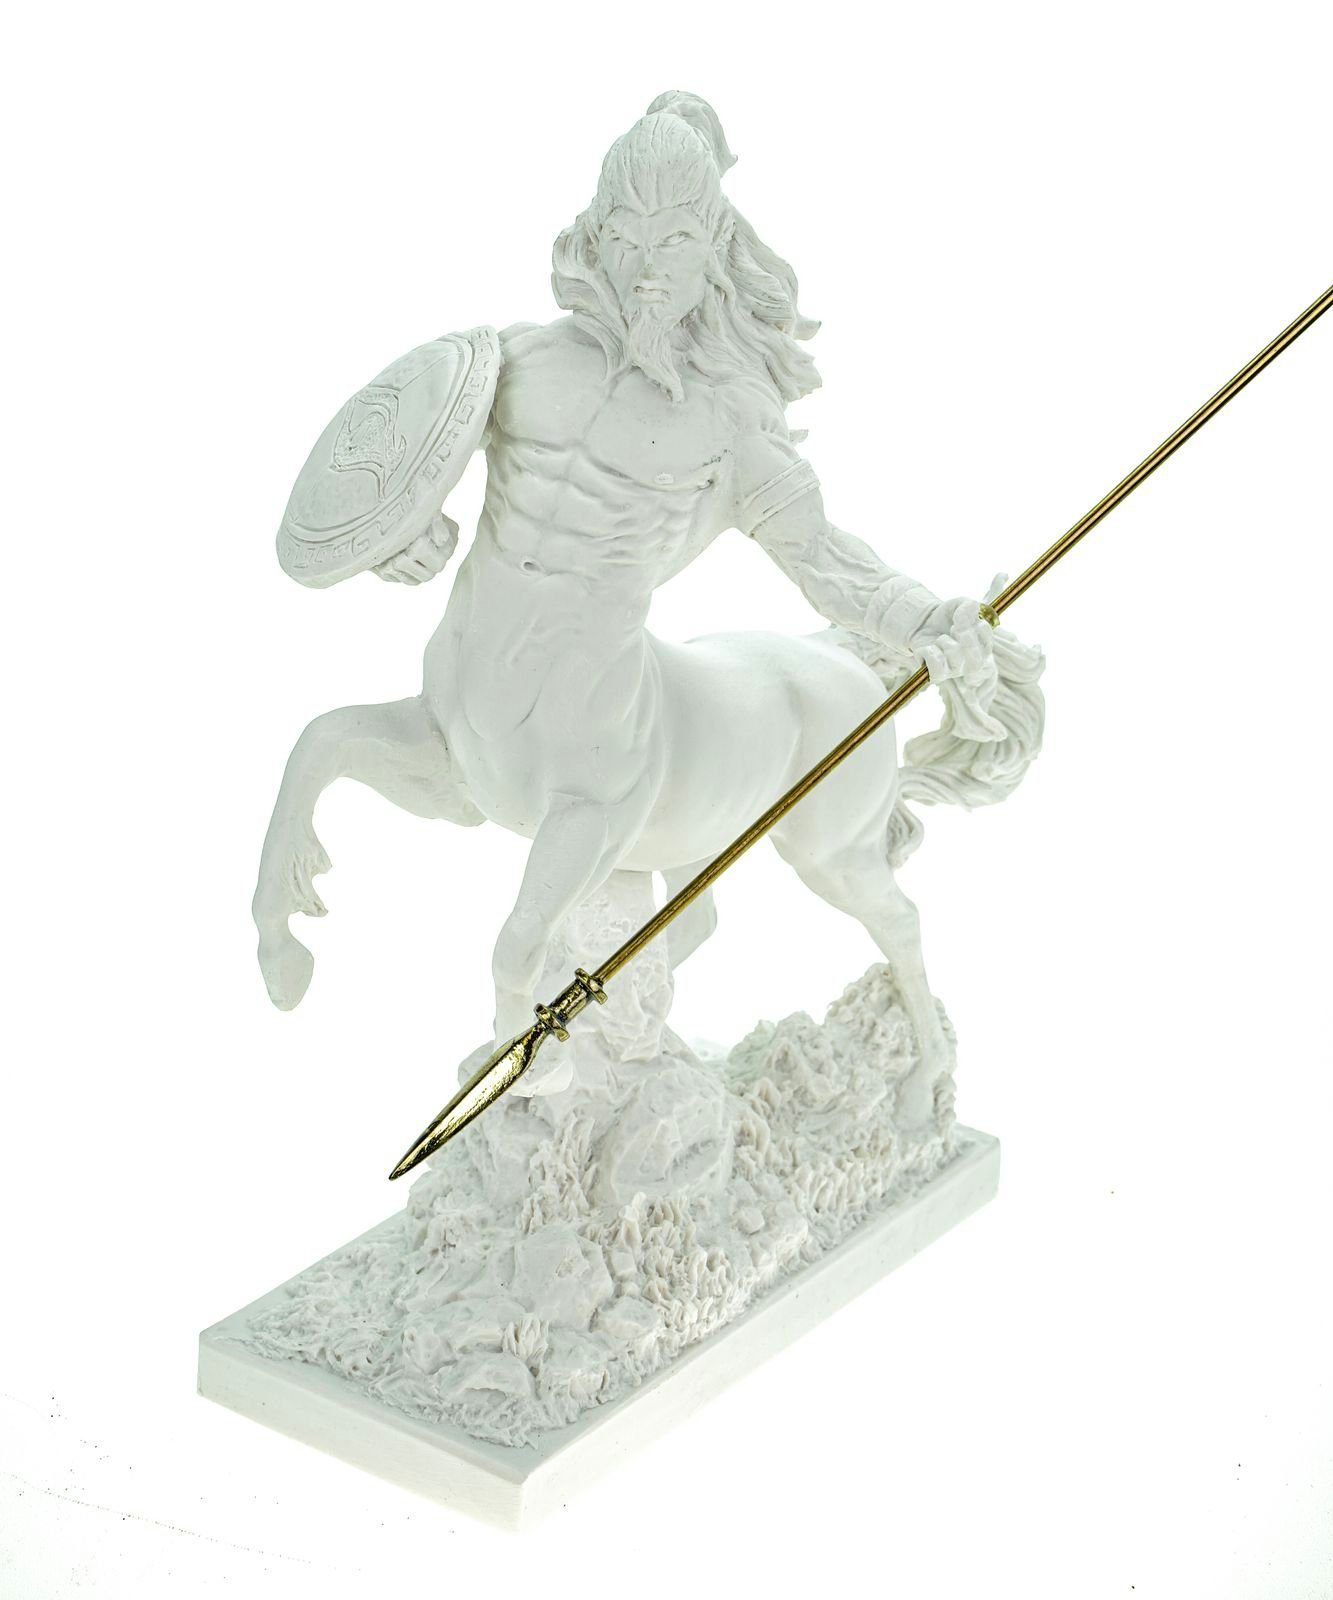 Kremers Schatzkiste Dekofigur Alabaster Figur Zentaur Mischwesen Pferd 30 cm